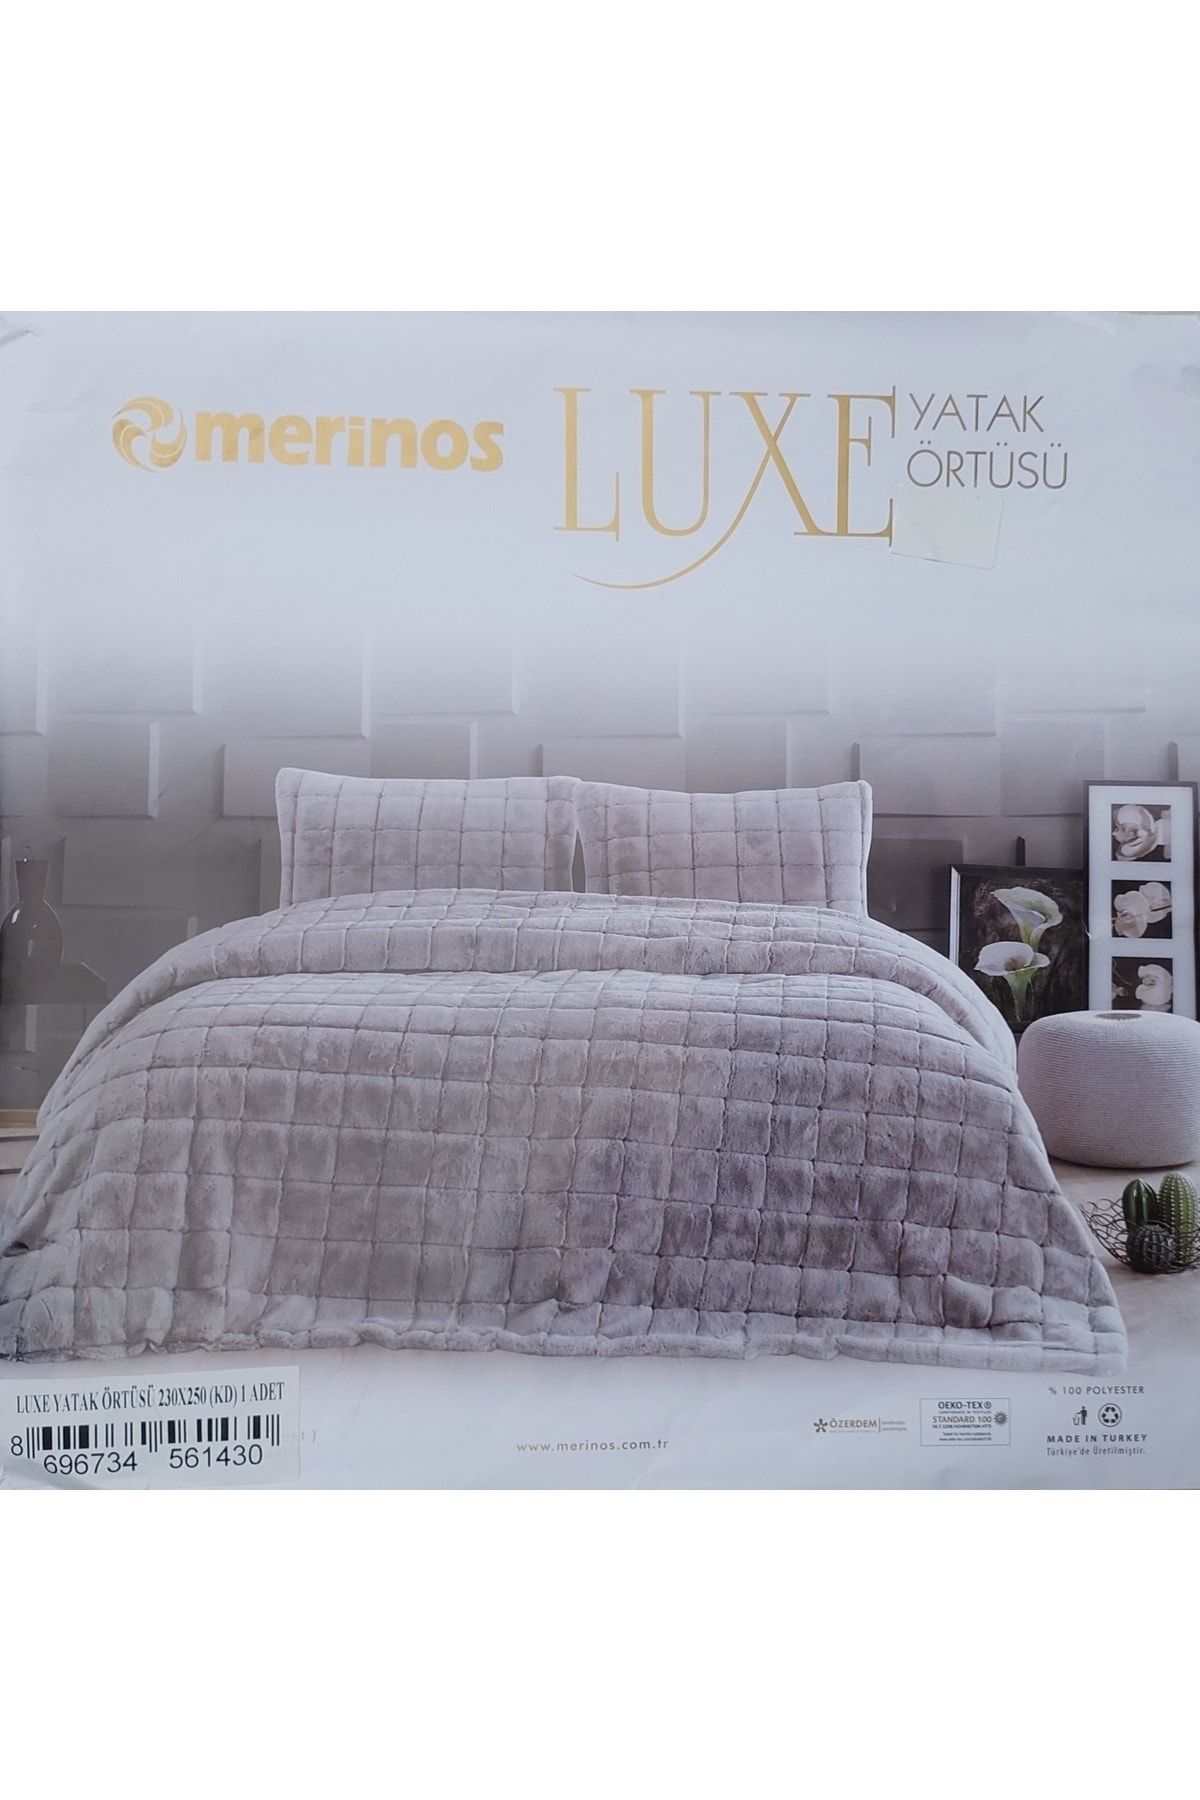 Merinos Luxe Çift Kişilik Tavşan Tüyü Yatak Örtüsü 230x250 Yastıksız